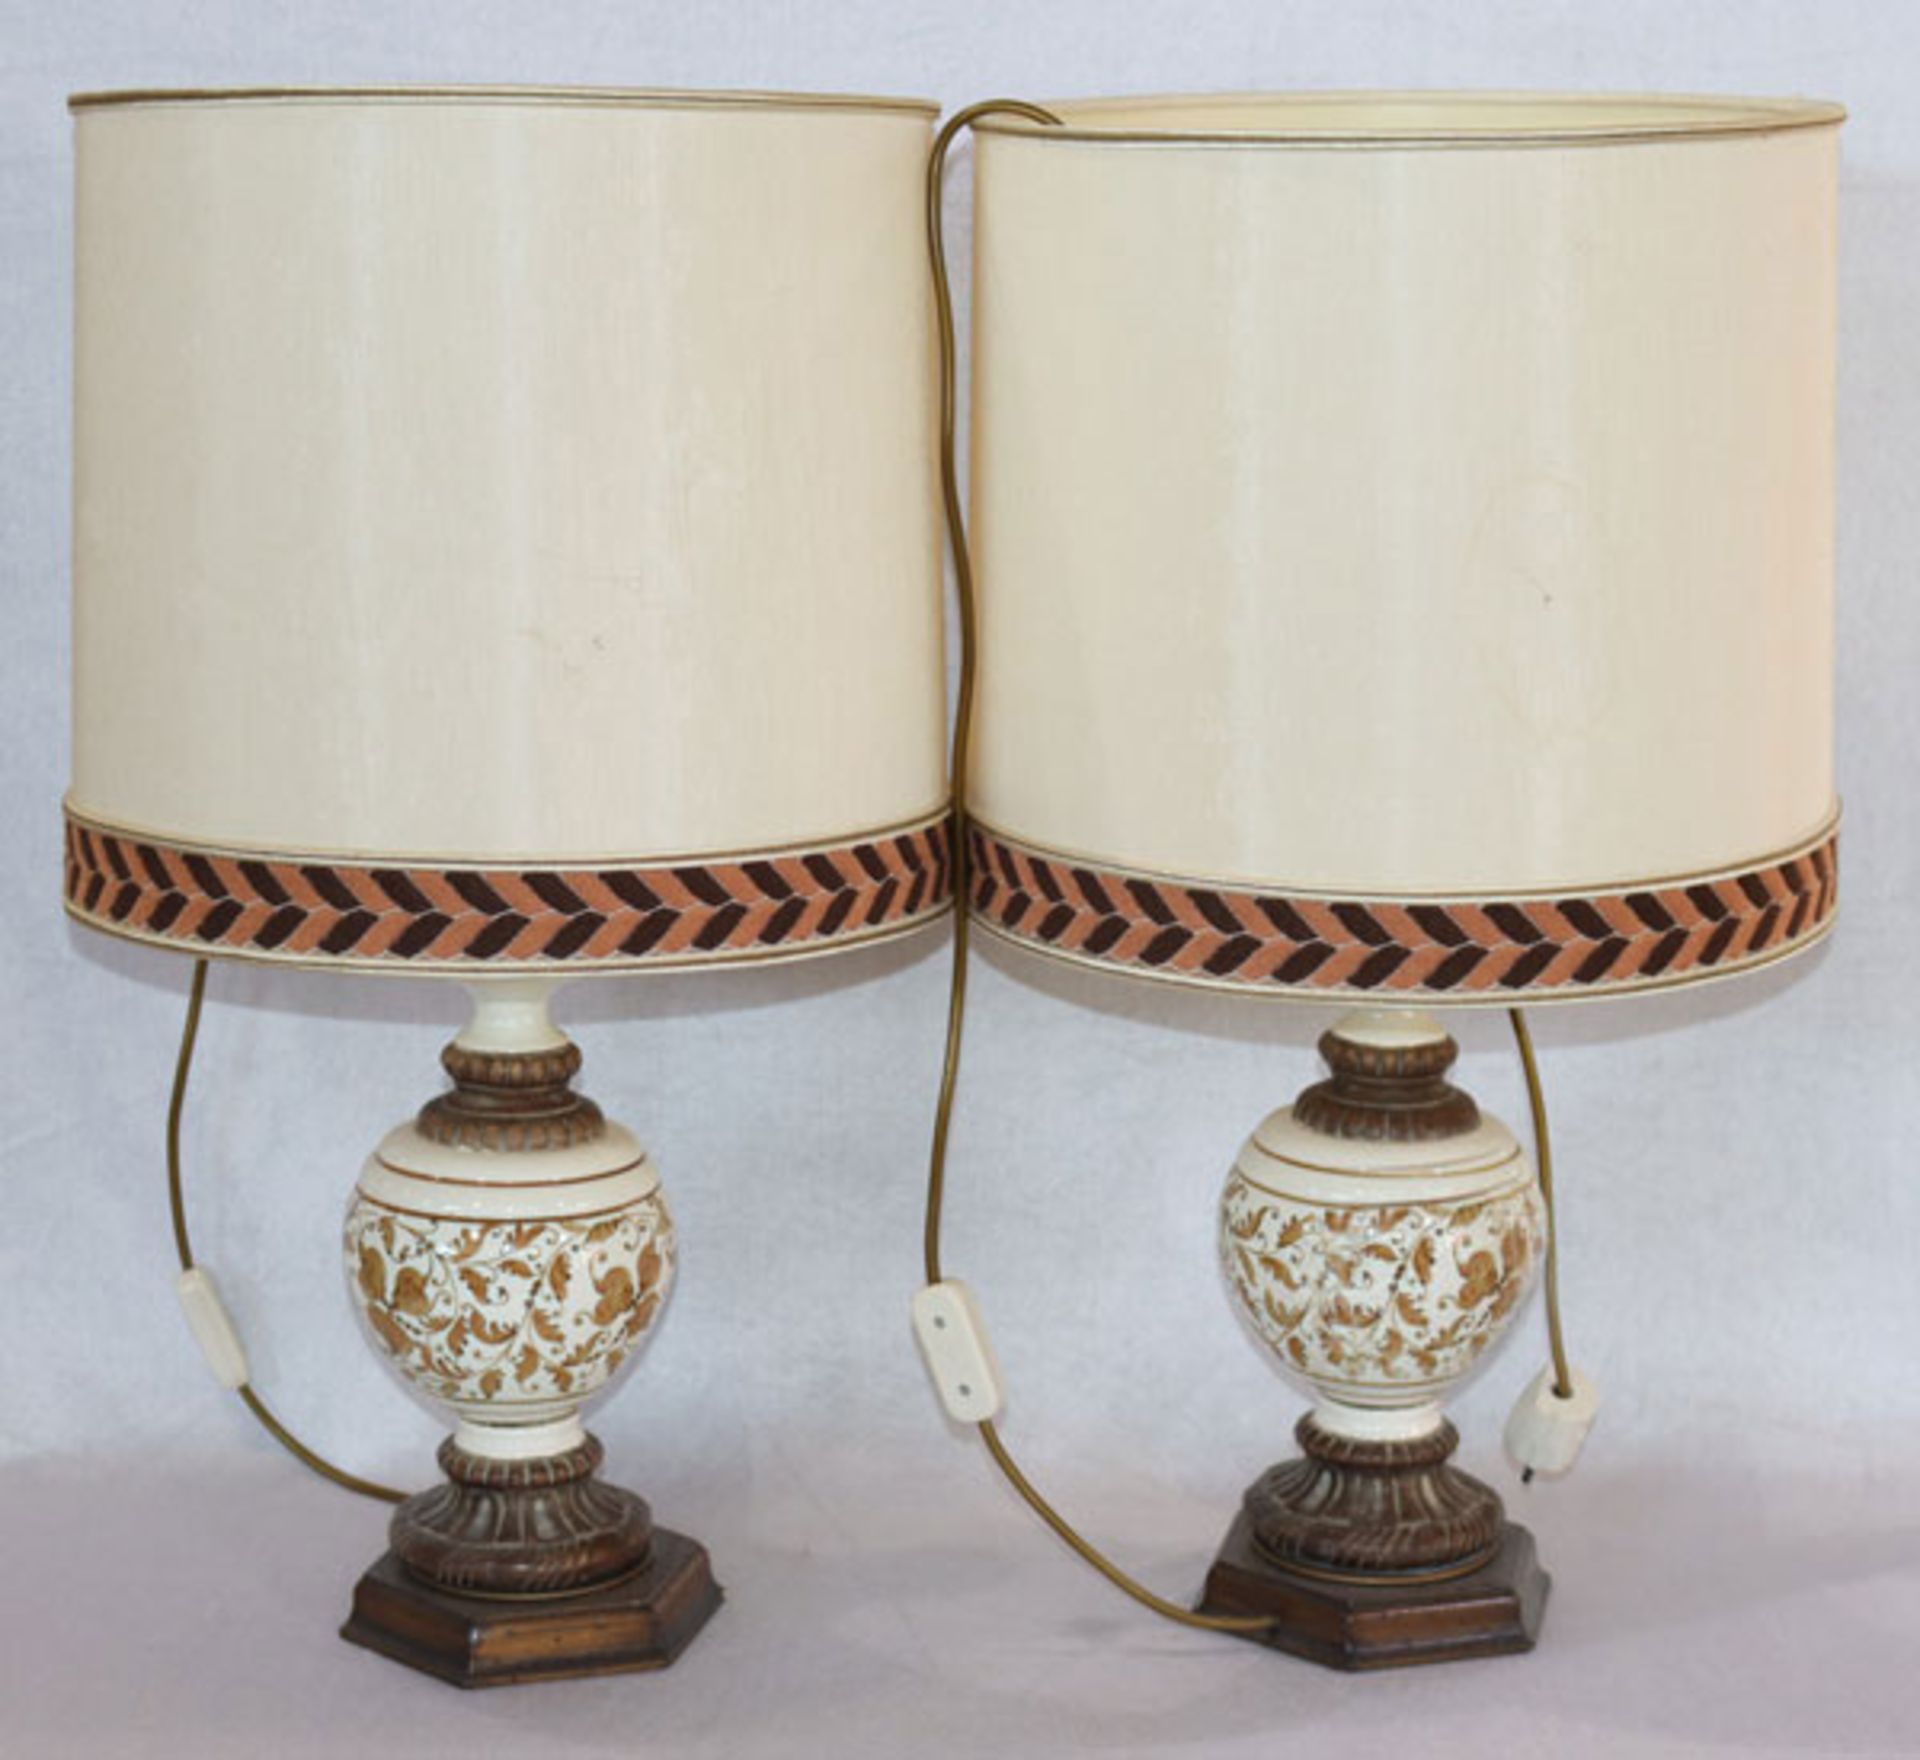 Paar Tischlampen mit Keramik/Holz Fuß, Floraldekor, beige Schirme, H 69 cm, D 38 cm, Funktion